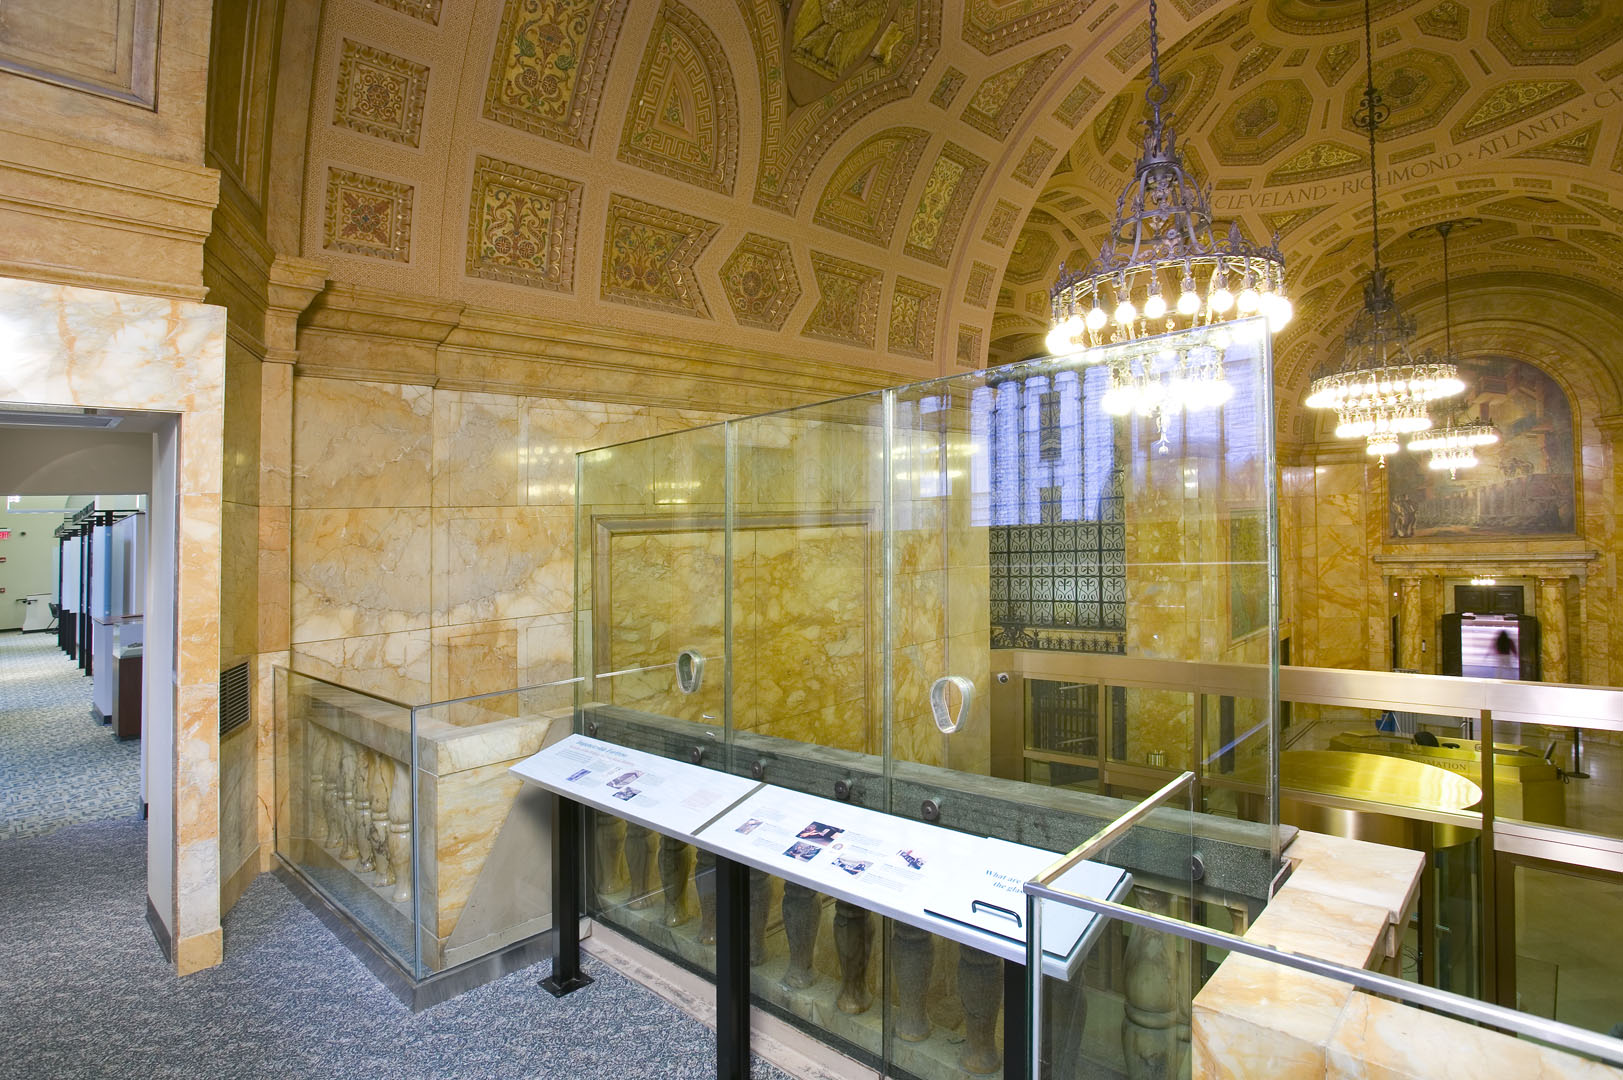 Money Museum, Exhibit overlooking historic interior